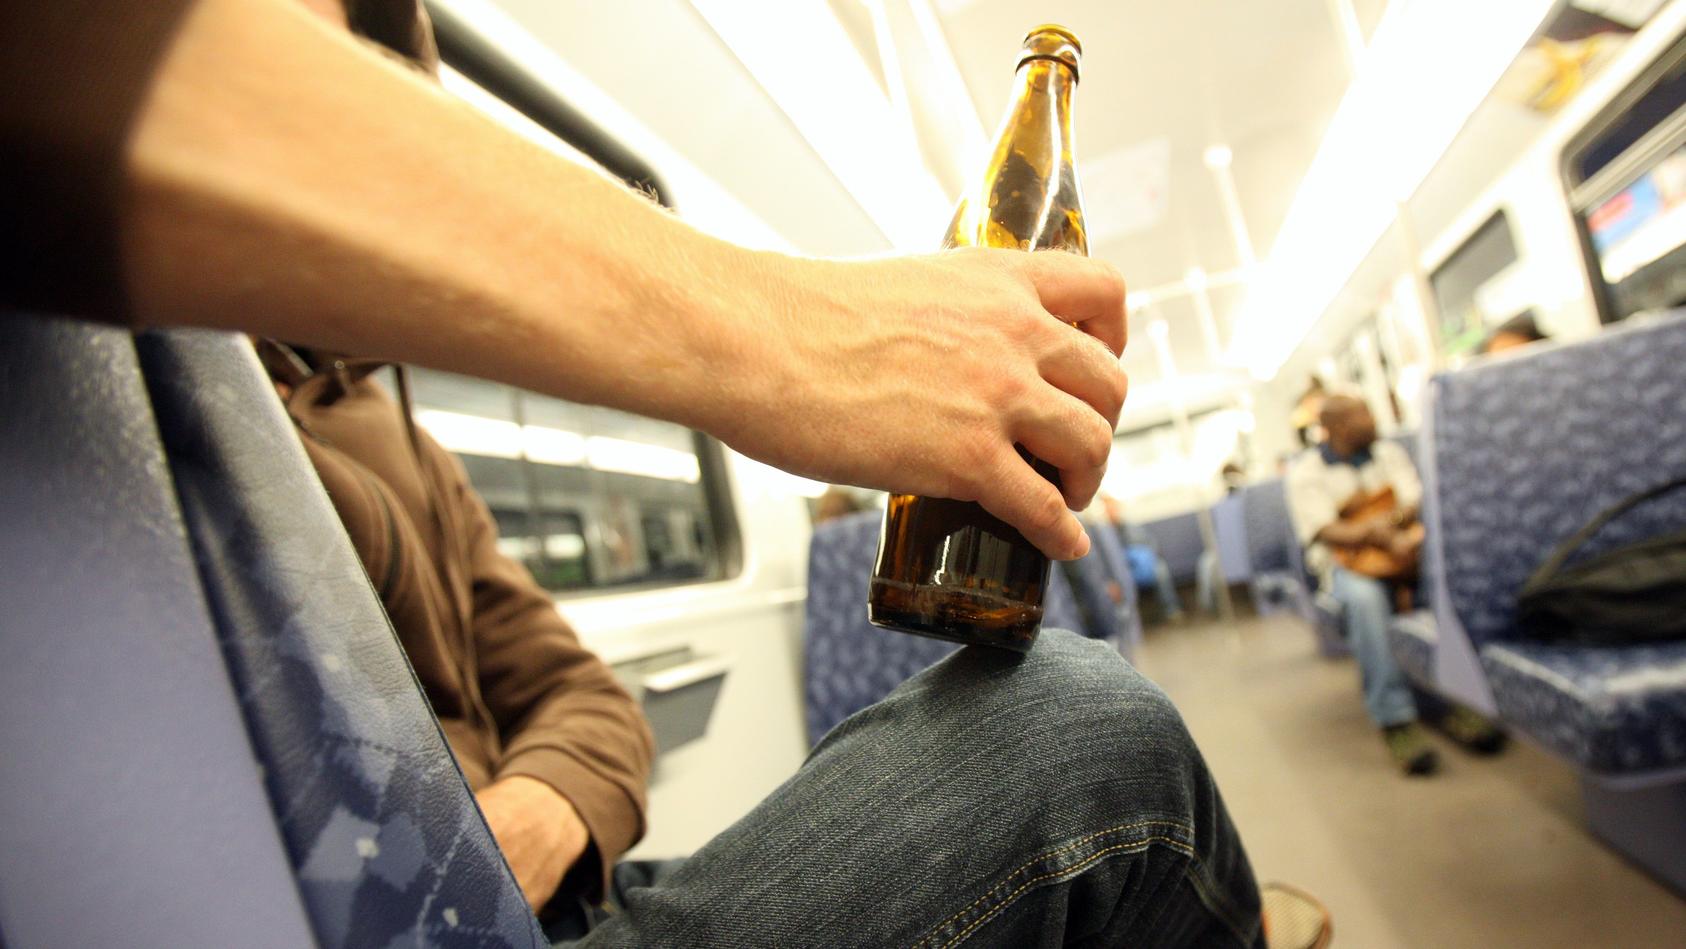 ILLUSTRATION - Ein Mann trinkt am Montagabend (29.08.2011) in einer U-Bahn in Hamburg eine Flasche Bier. Ab dem 1. September gilt auf allen U- und S-Bahnen, Bussen sowie den Bahnhöfen des Hamburger Verkehrsverbunds (HVV) ein striktes Alkoholverbot. F